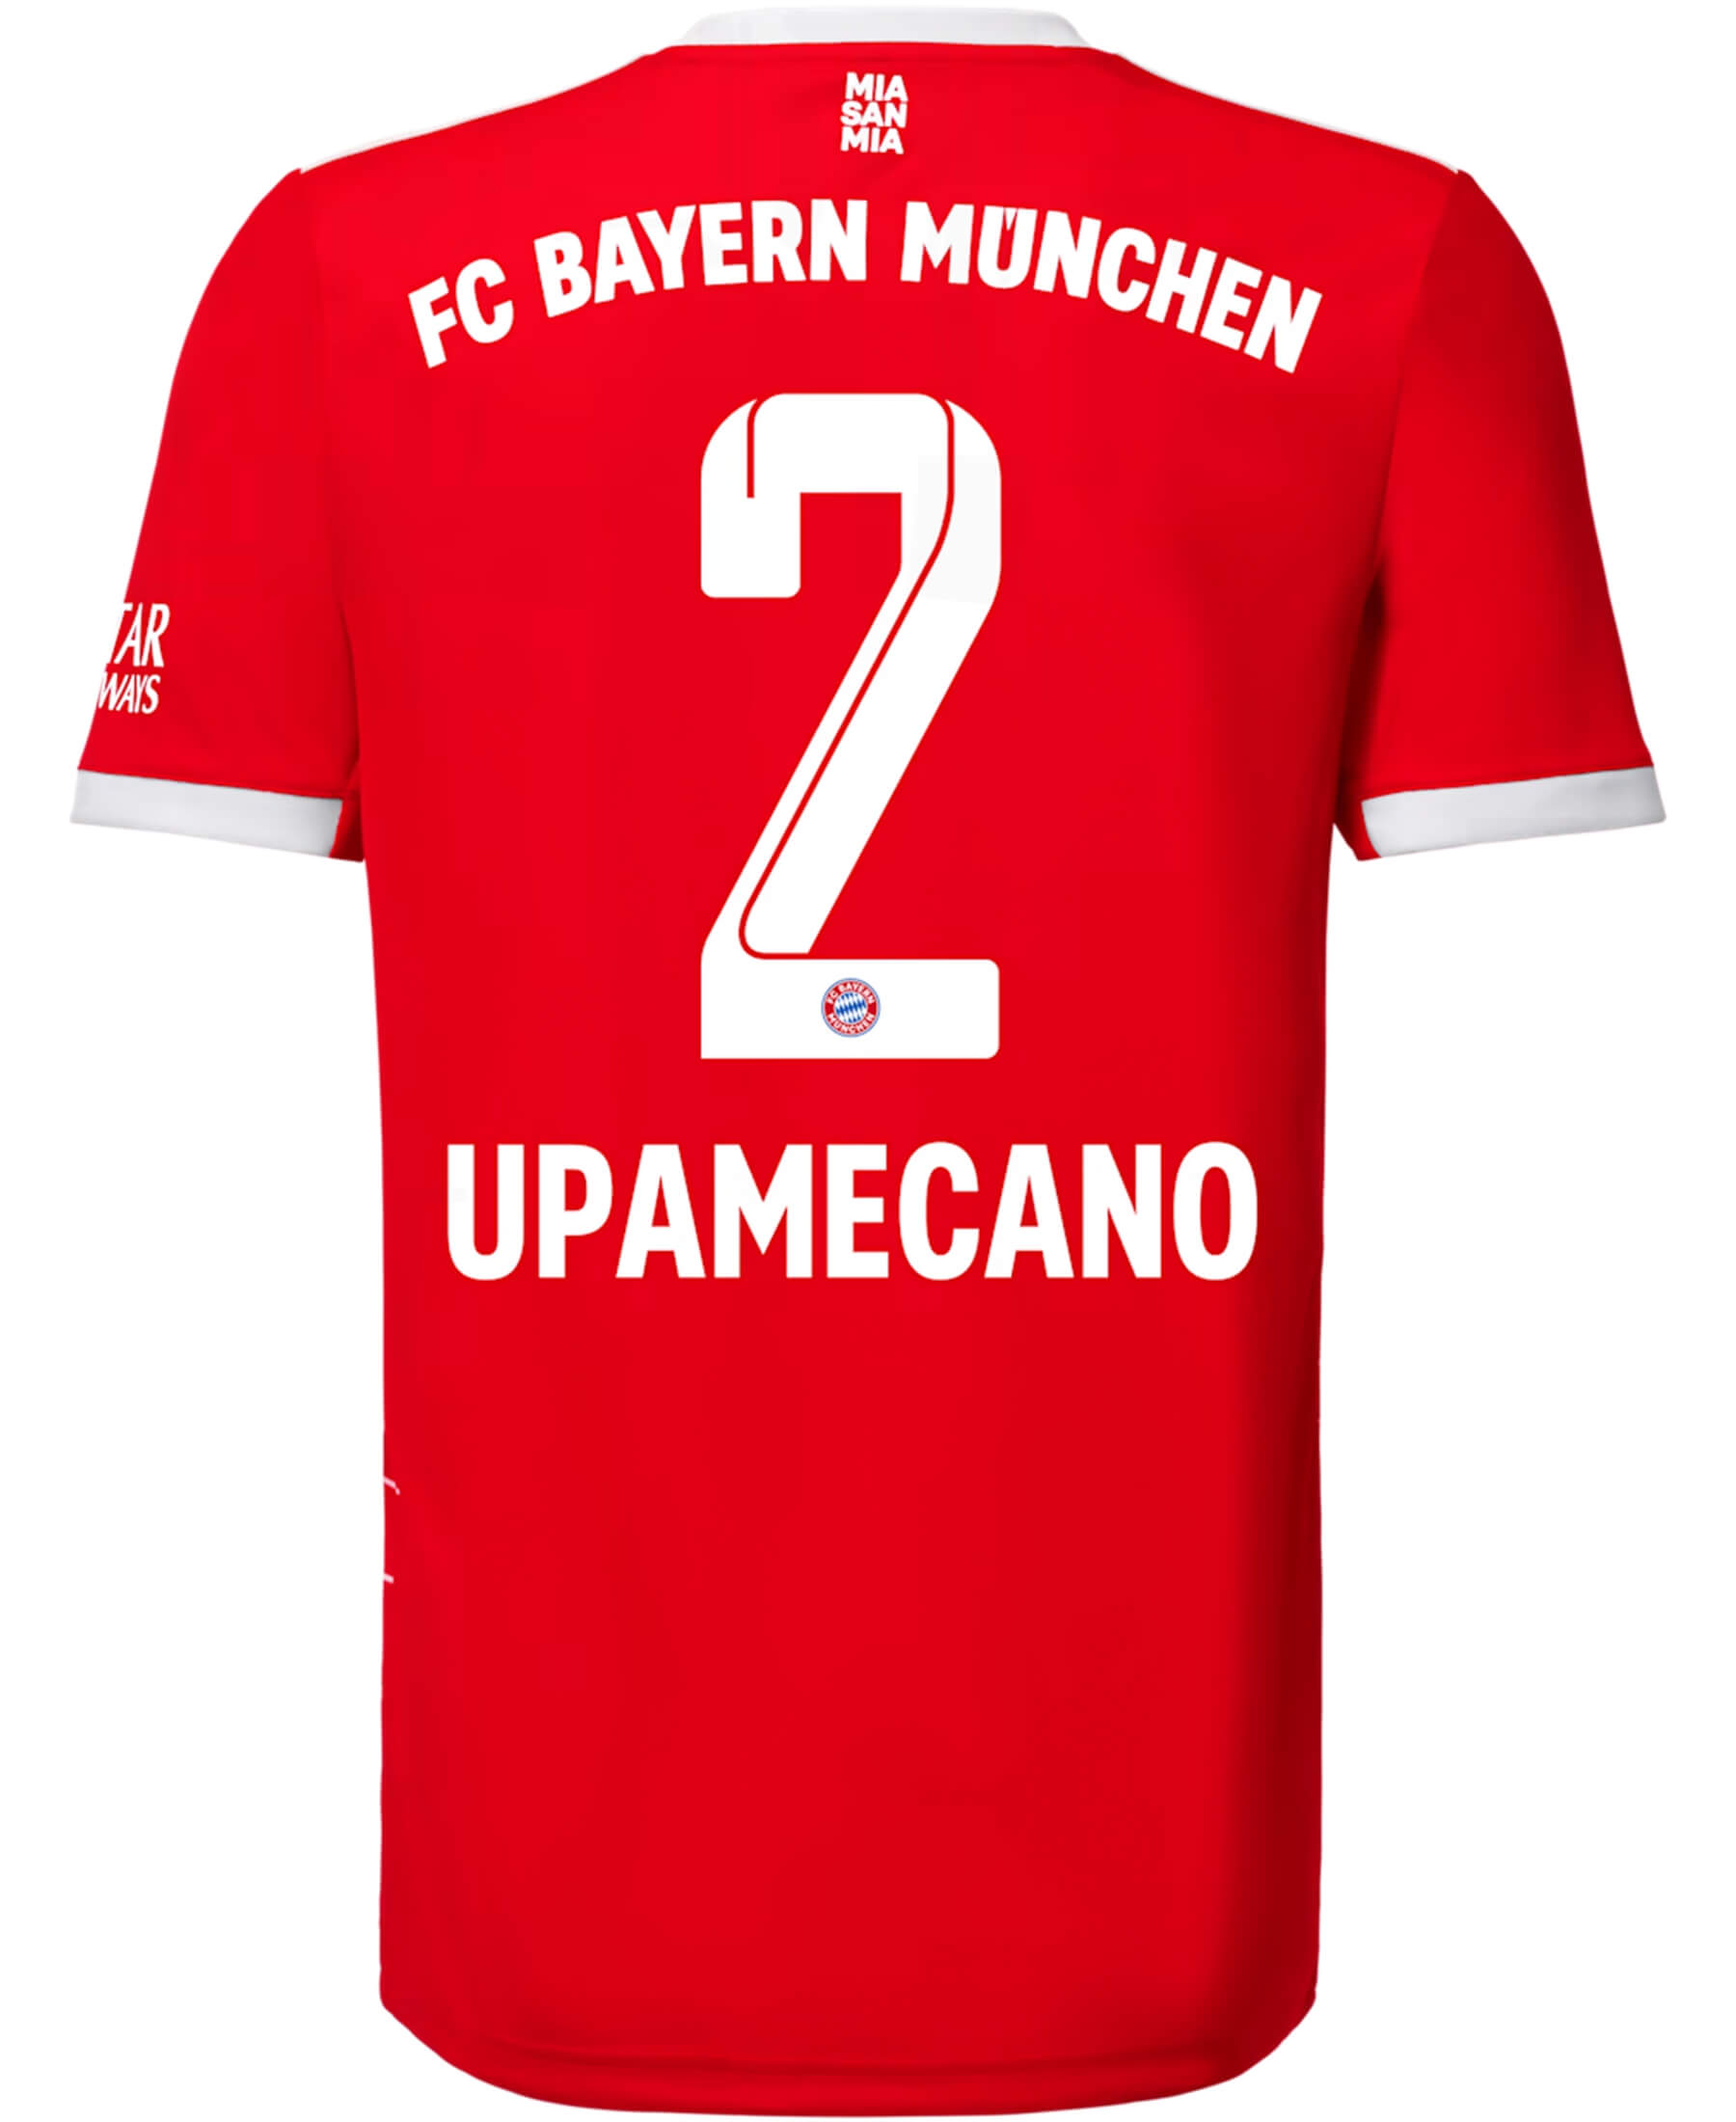 Offizieller FC Bayern München FCB Upamecano Spielerflock für das Heimtrikot 2022-2023. Zeige deine Unterstützung für den Verein mit Stolz. Hochwertiges Materialien für optimalen Komfort. Im Onlineshop SHOP4TEAMSPORT erhältlich. Sichere dir jetzt deinen original Flock und sei Teil der Bayern-Familie! 